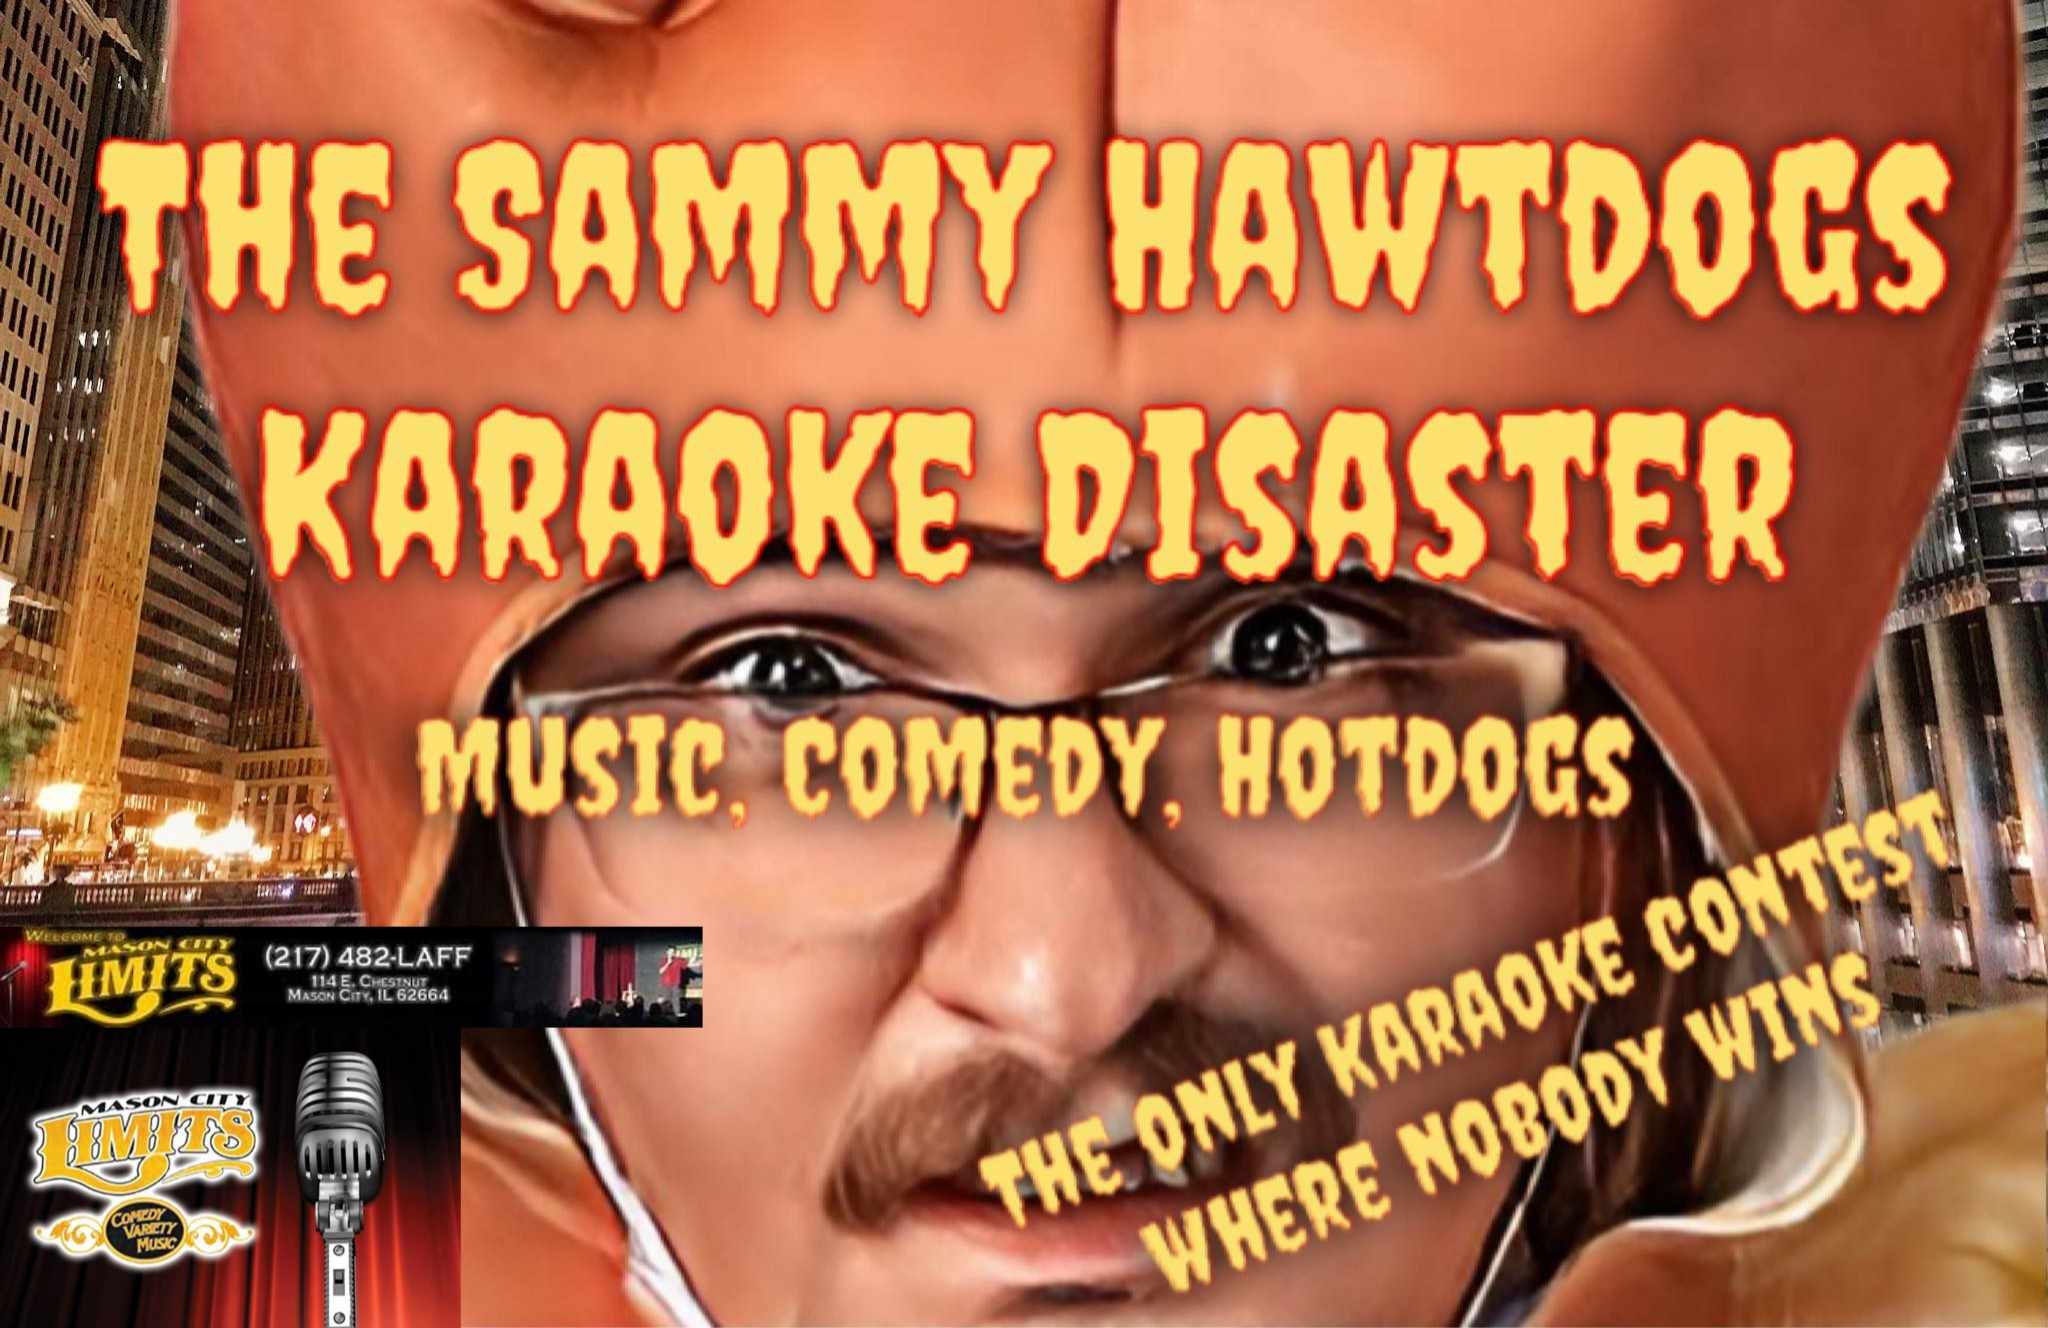 Comedian Karaokee Disaster Comedy Showcase